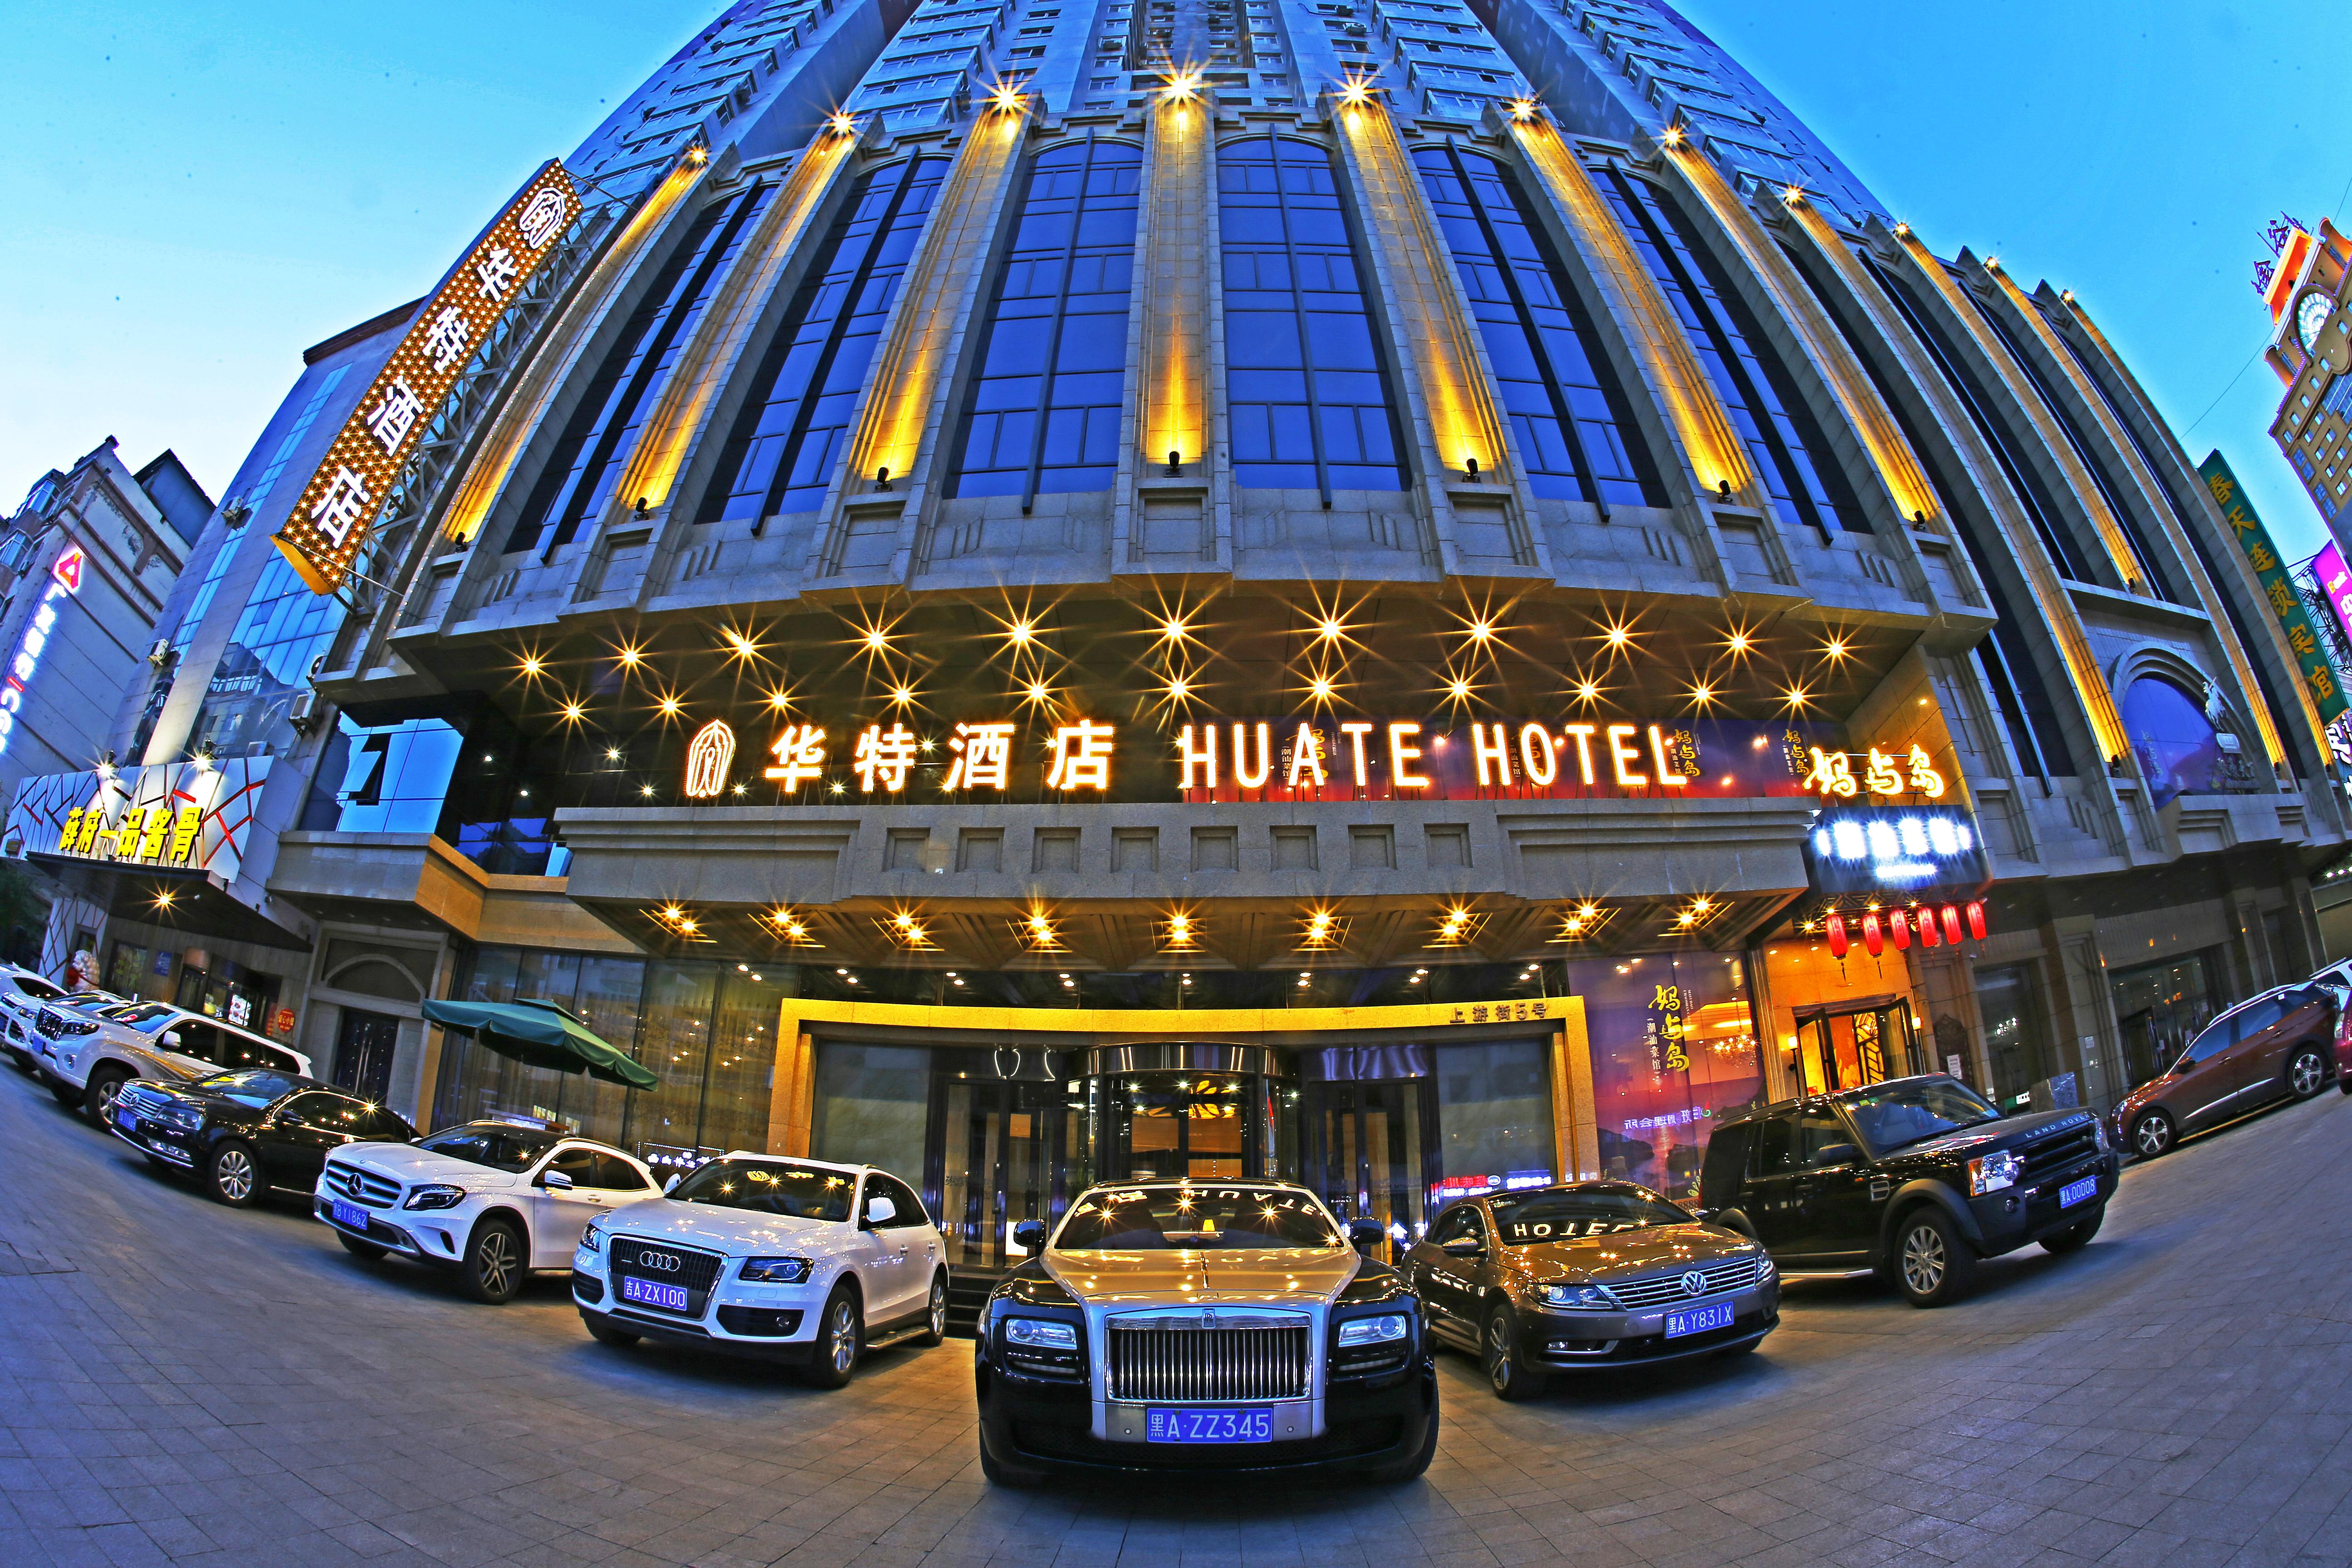 哈尔滨中央大街华特酒店